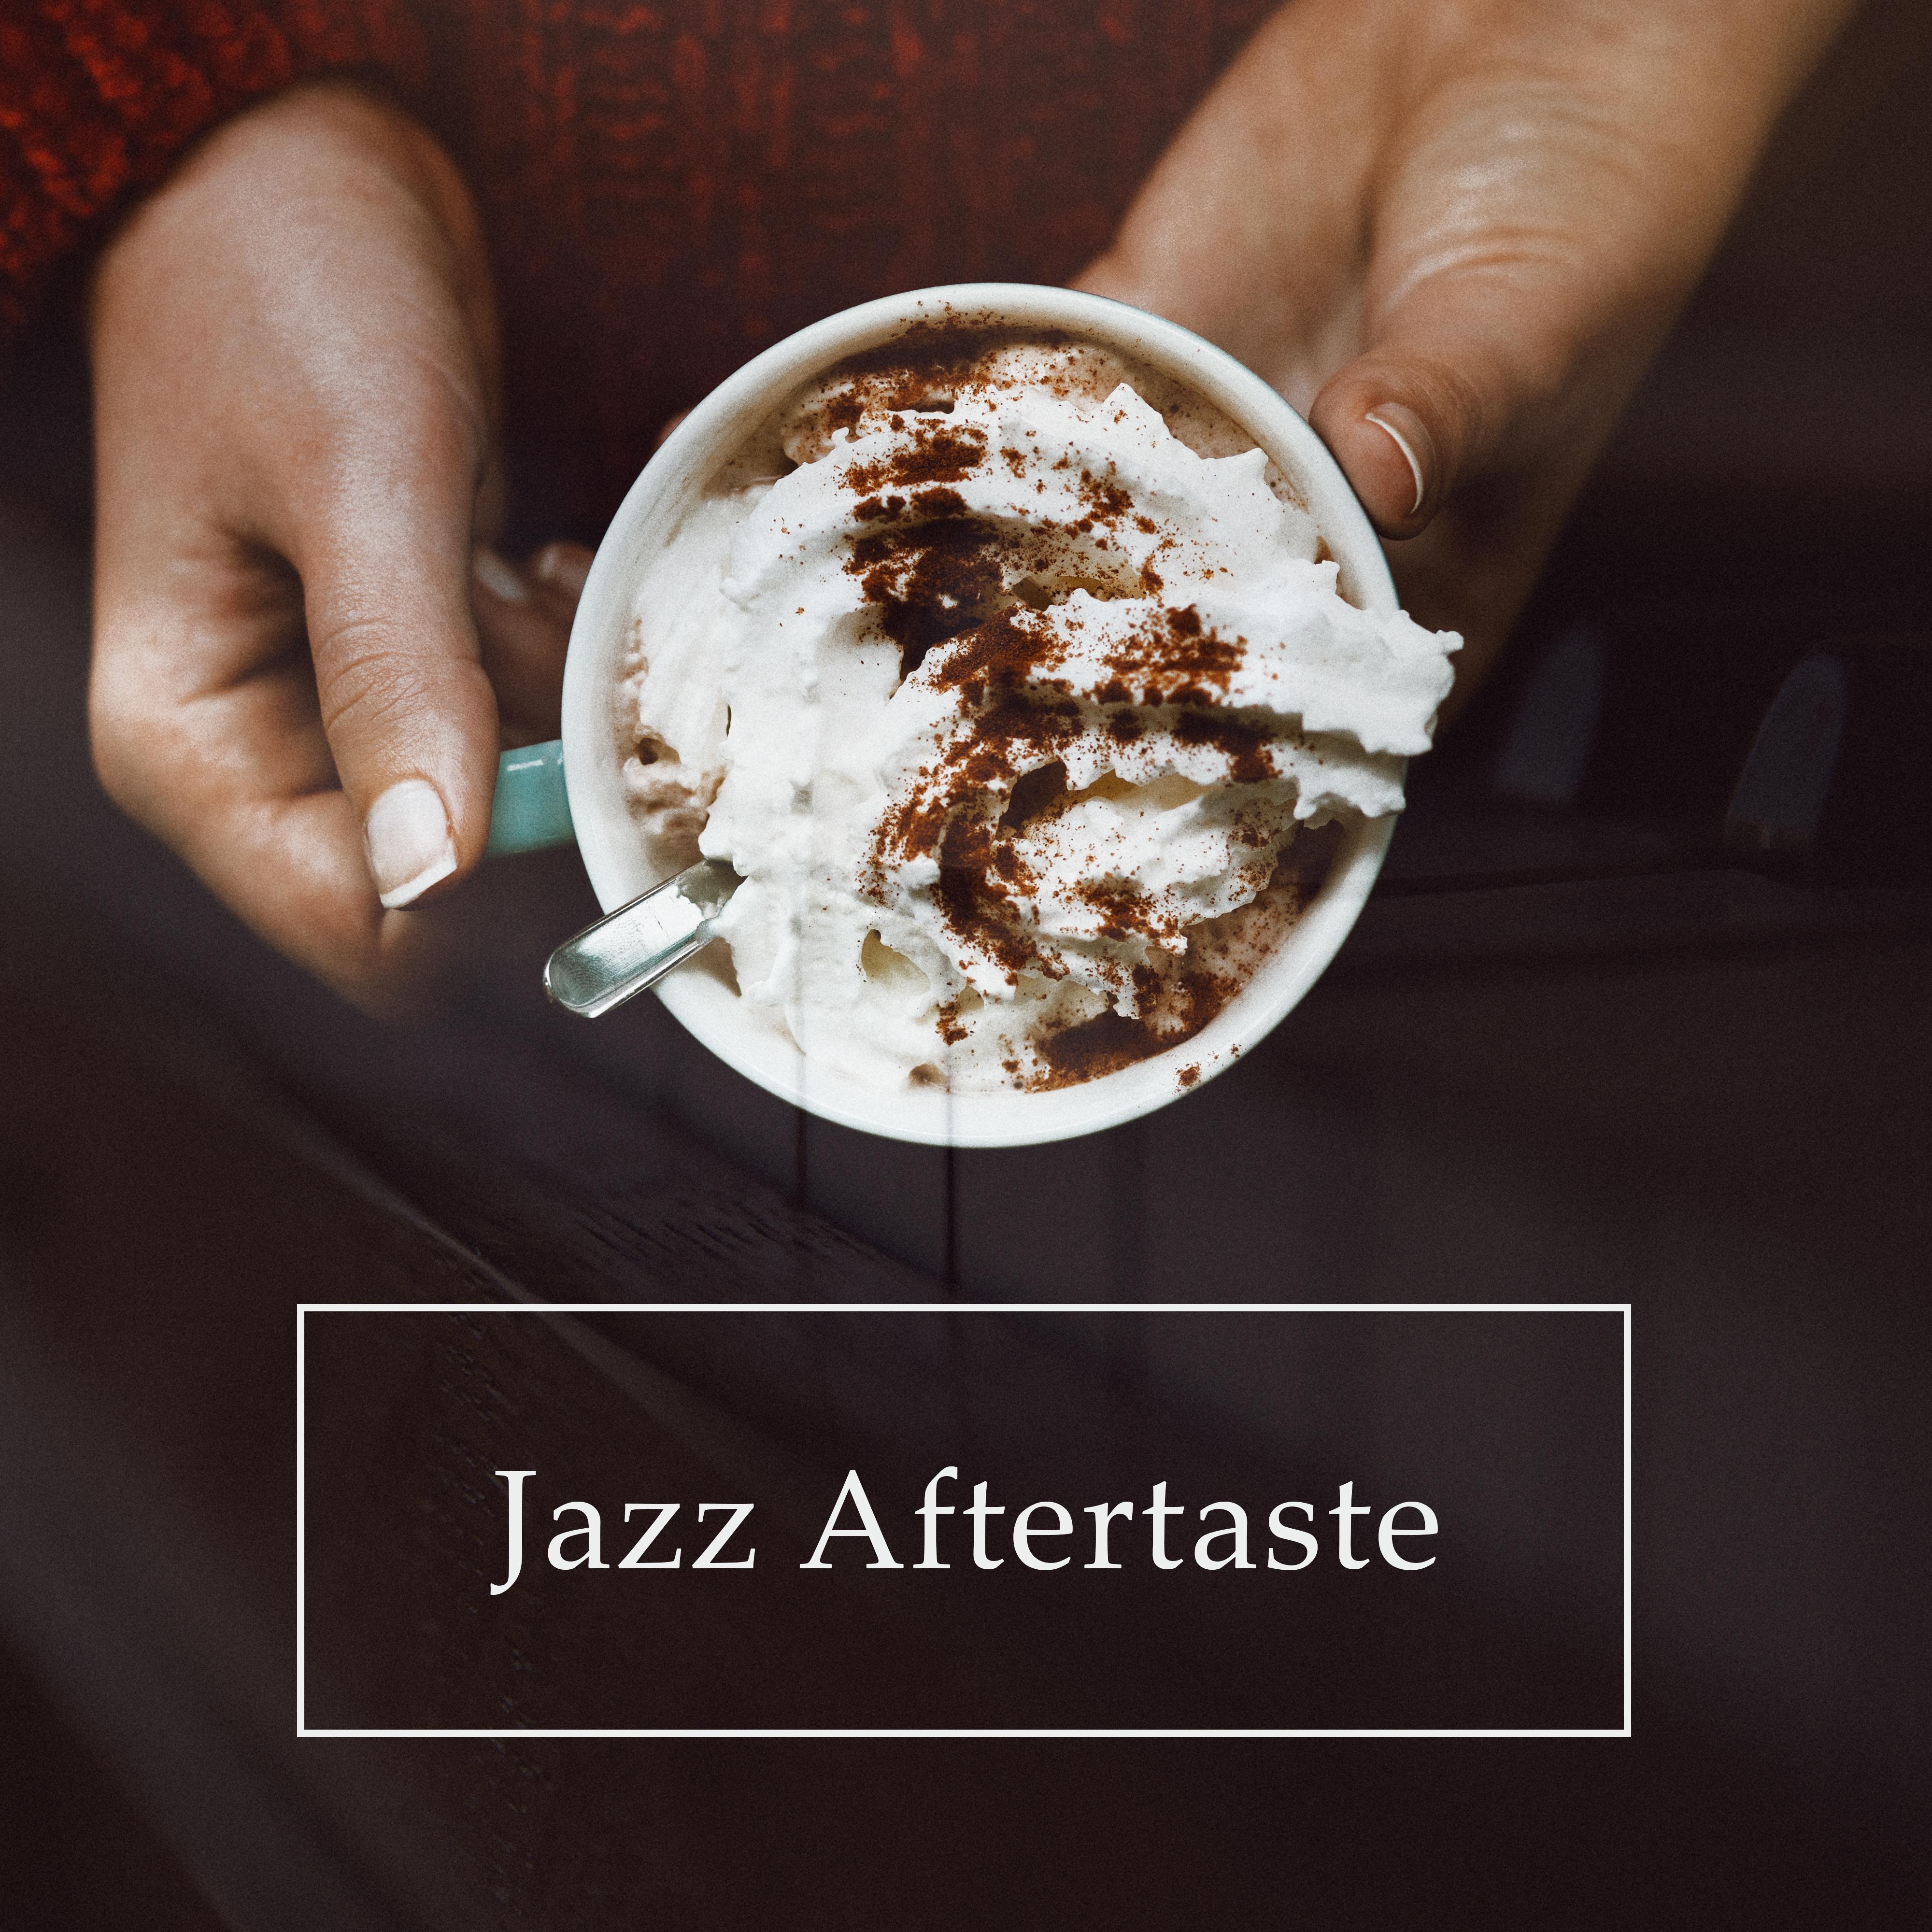 Jazz Aftertaste